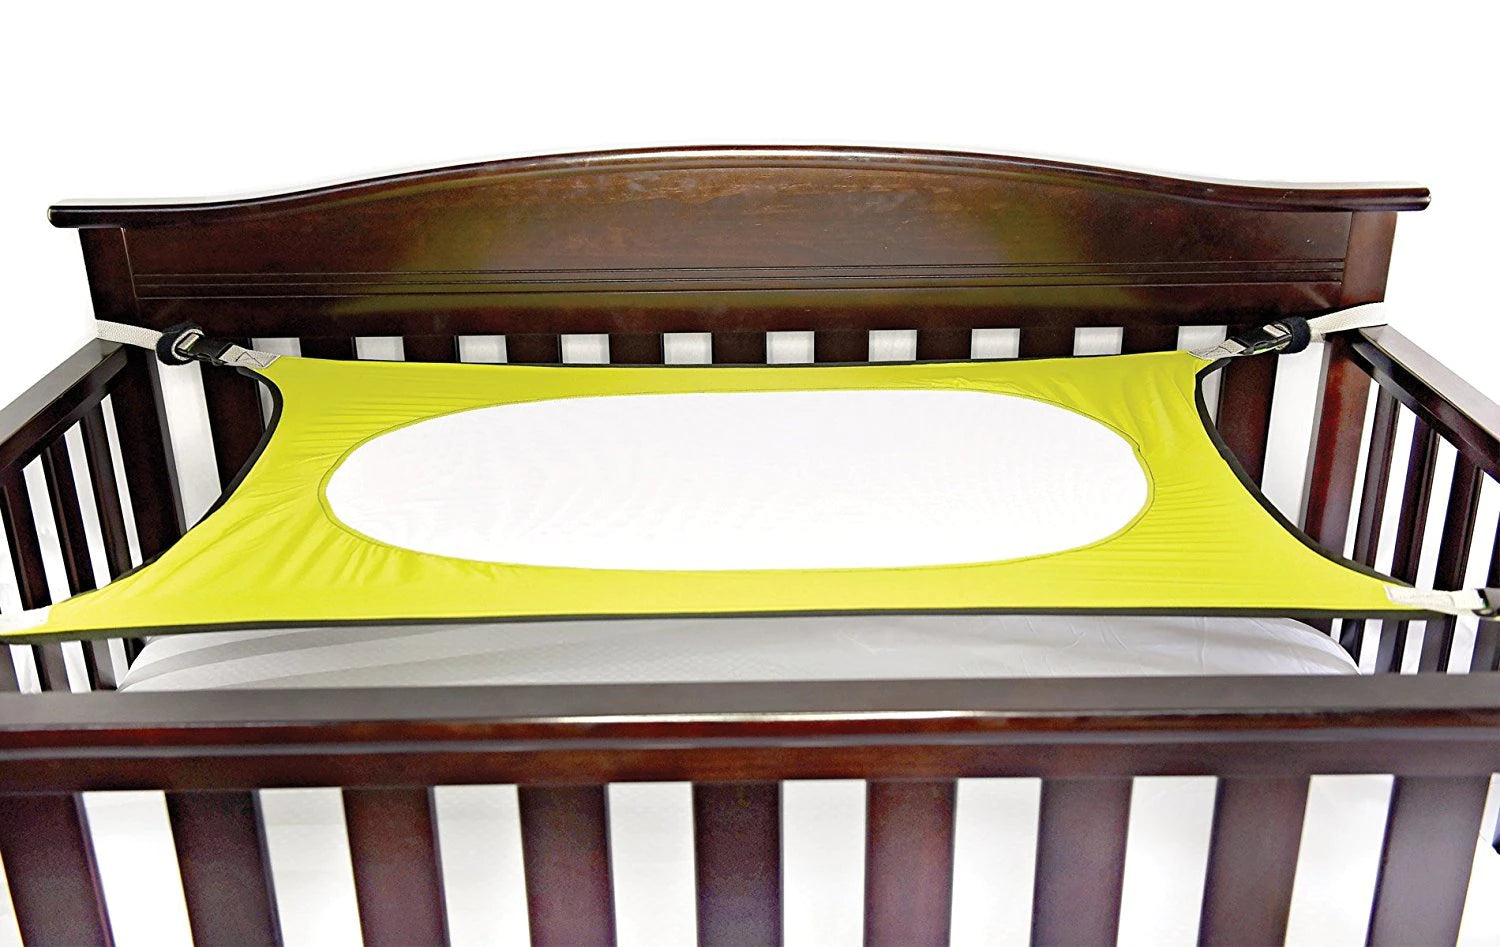 BabySwing™ - Baby hangmat voor wieg